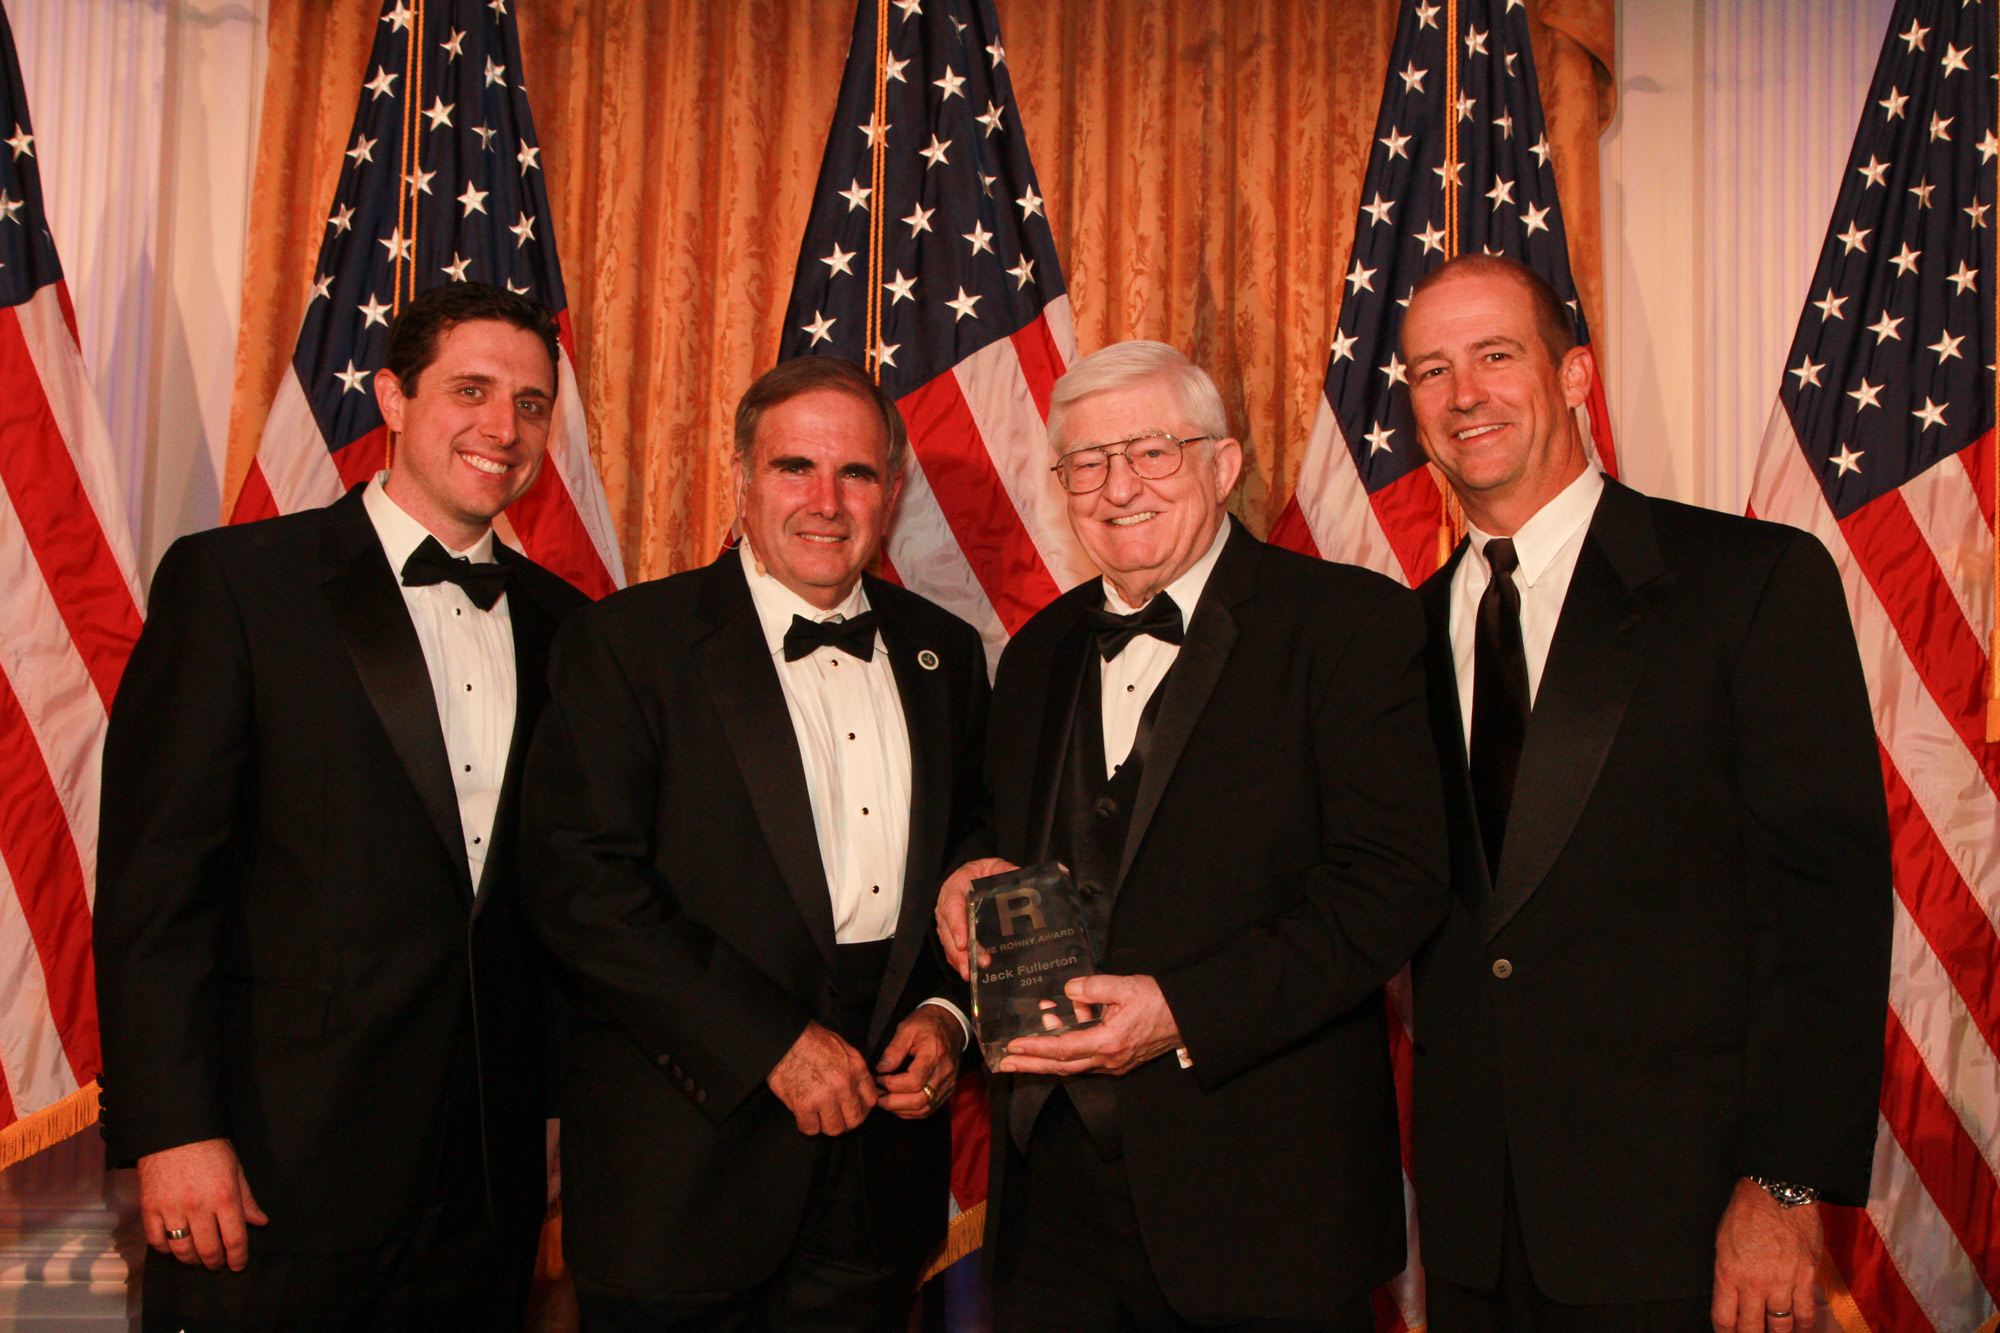 Jack "Coach" Fullerton Receives the Rohny Award 2014